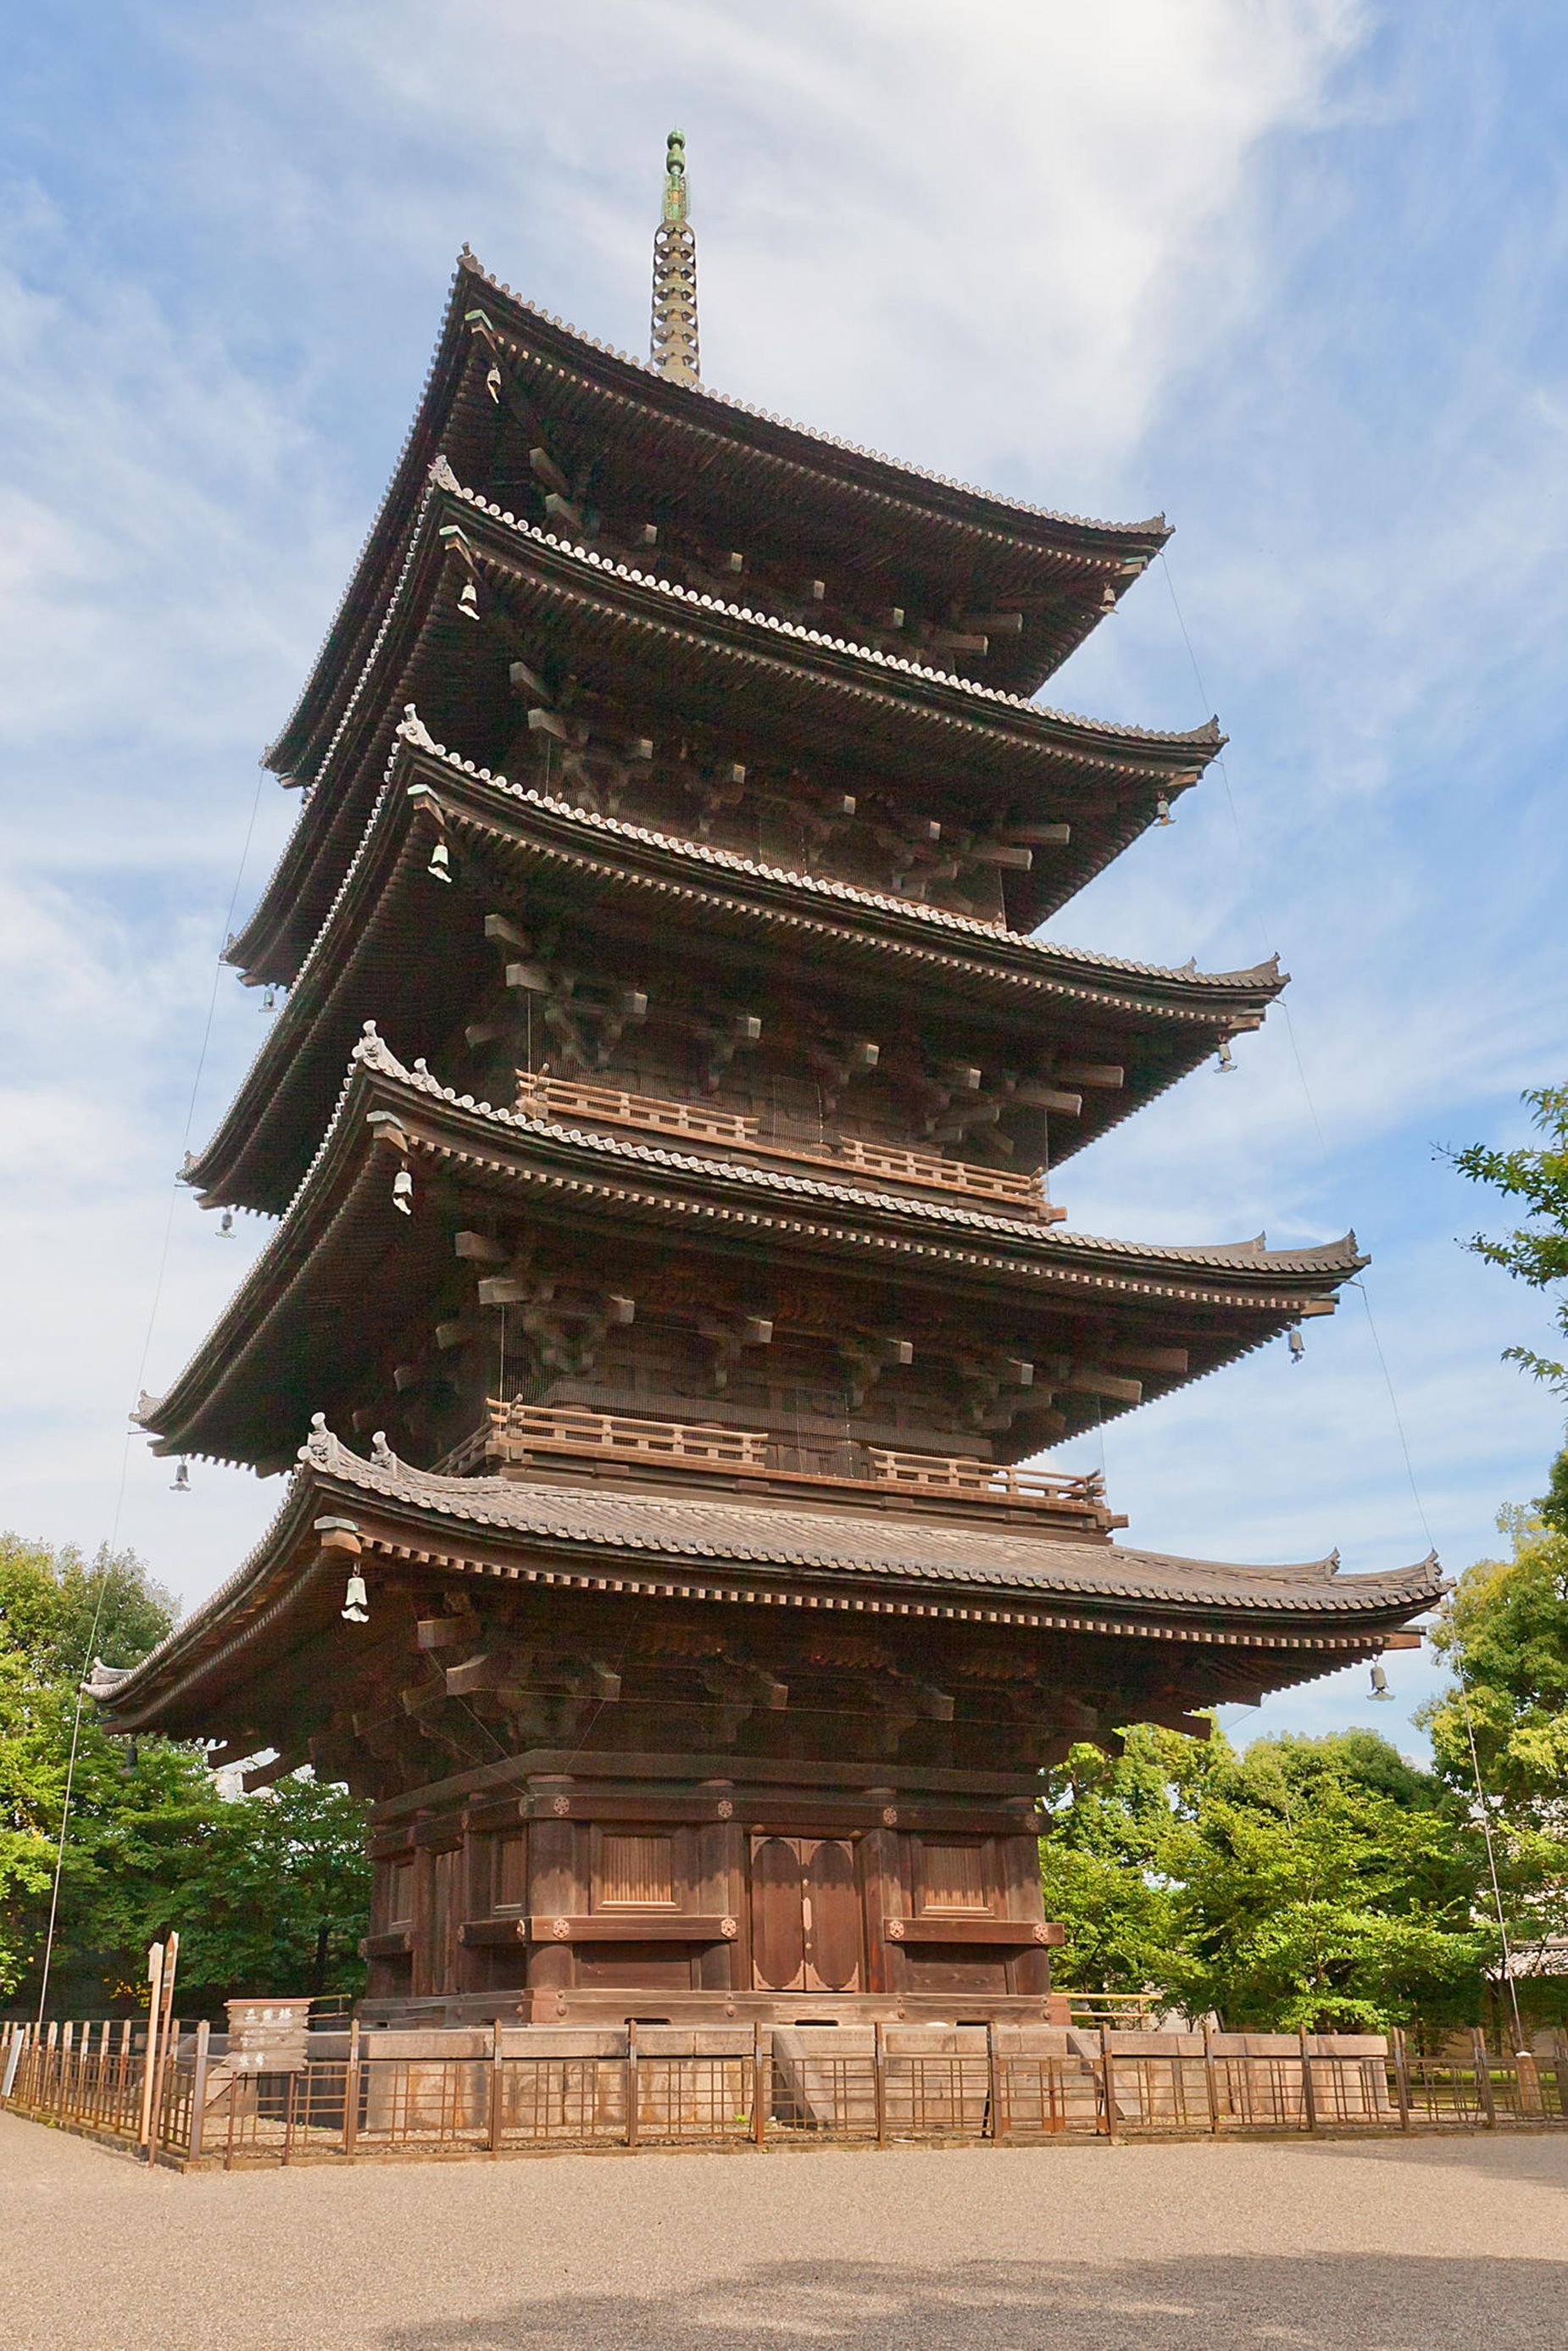 Kyoto'nun Toji tapınağındaki 17. yüzyıldan kalma beş katlı pagoda.